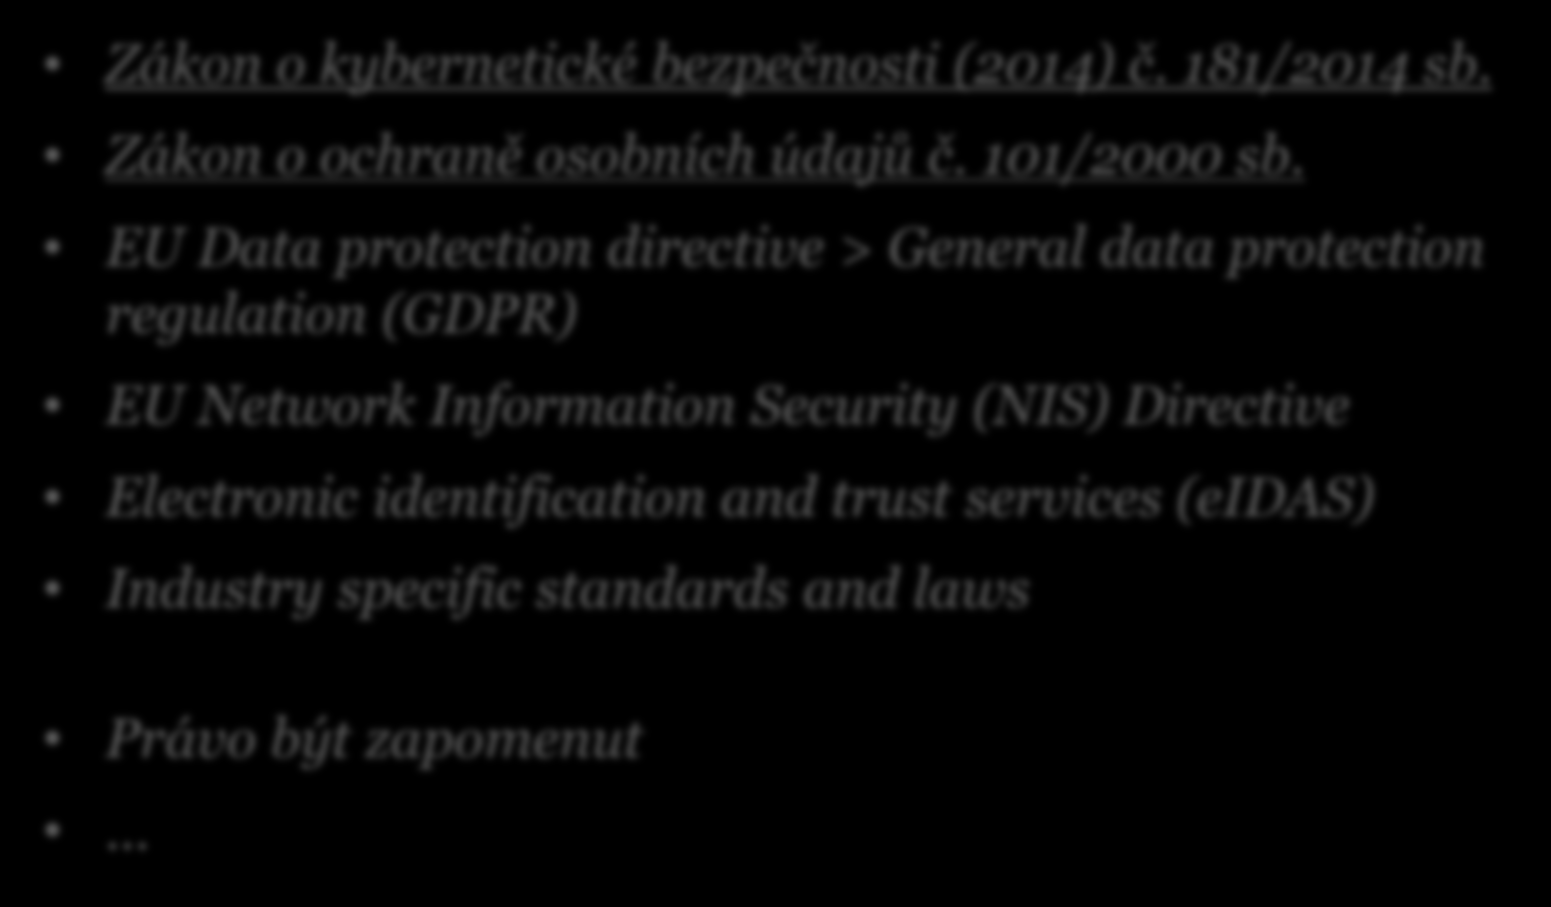 Aktuální legislativa a rozhodnutí Zákon o kybernetické bezpečnosti (2014) č. 181/2014 sb. Zákon o ochraně osobních údajů č. 101/2000 sb.